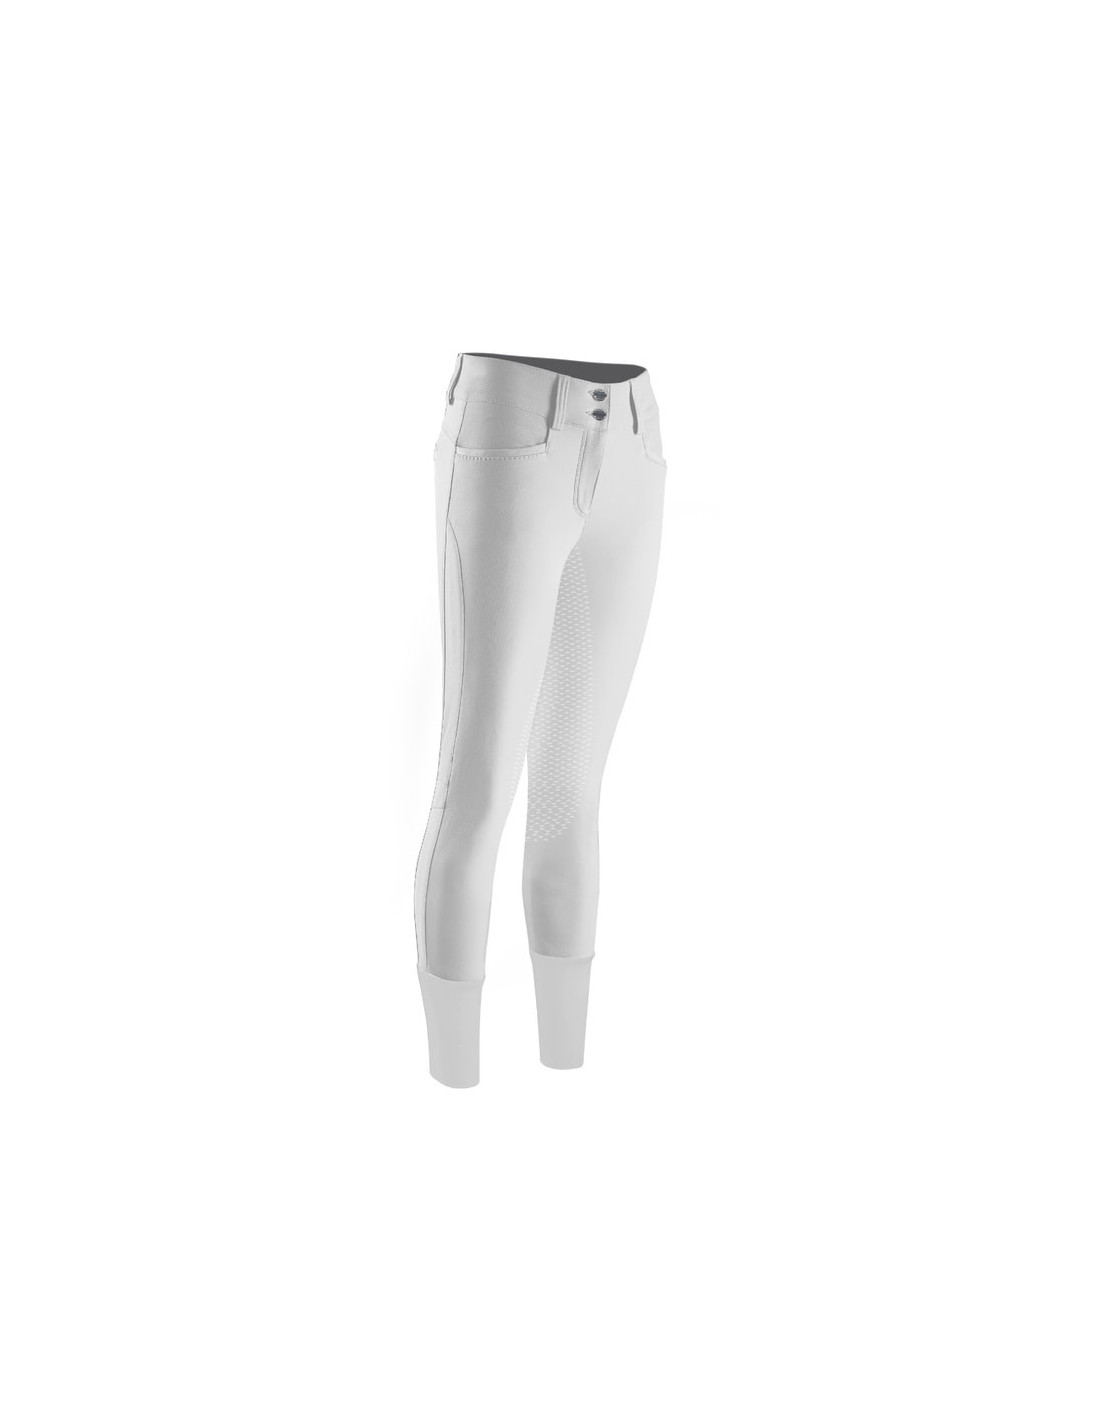 Pantalon Animo Nalindi Permanent blanc